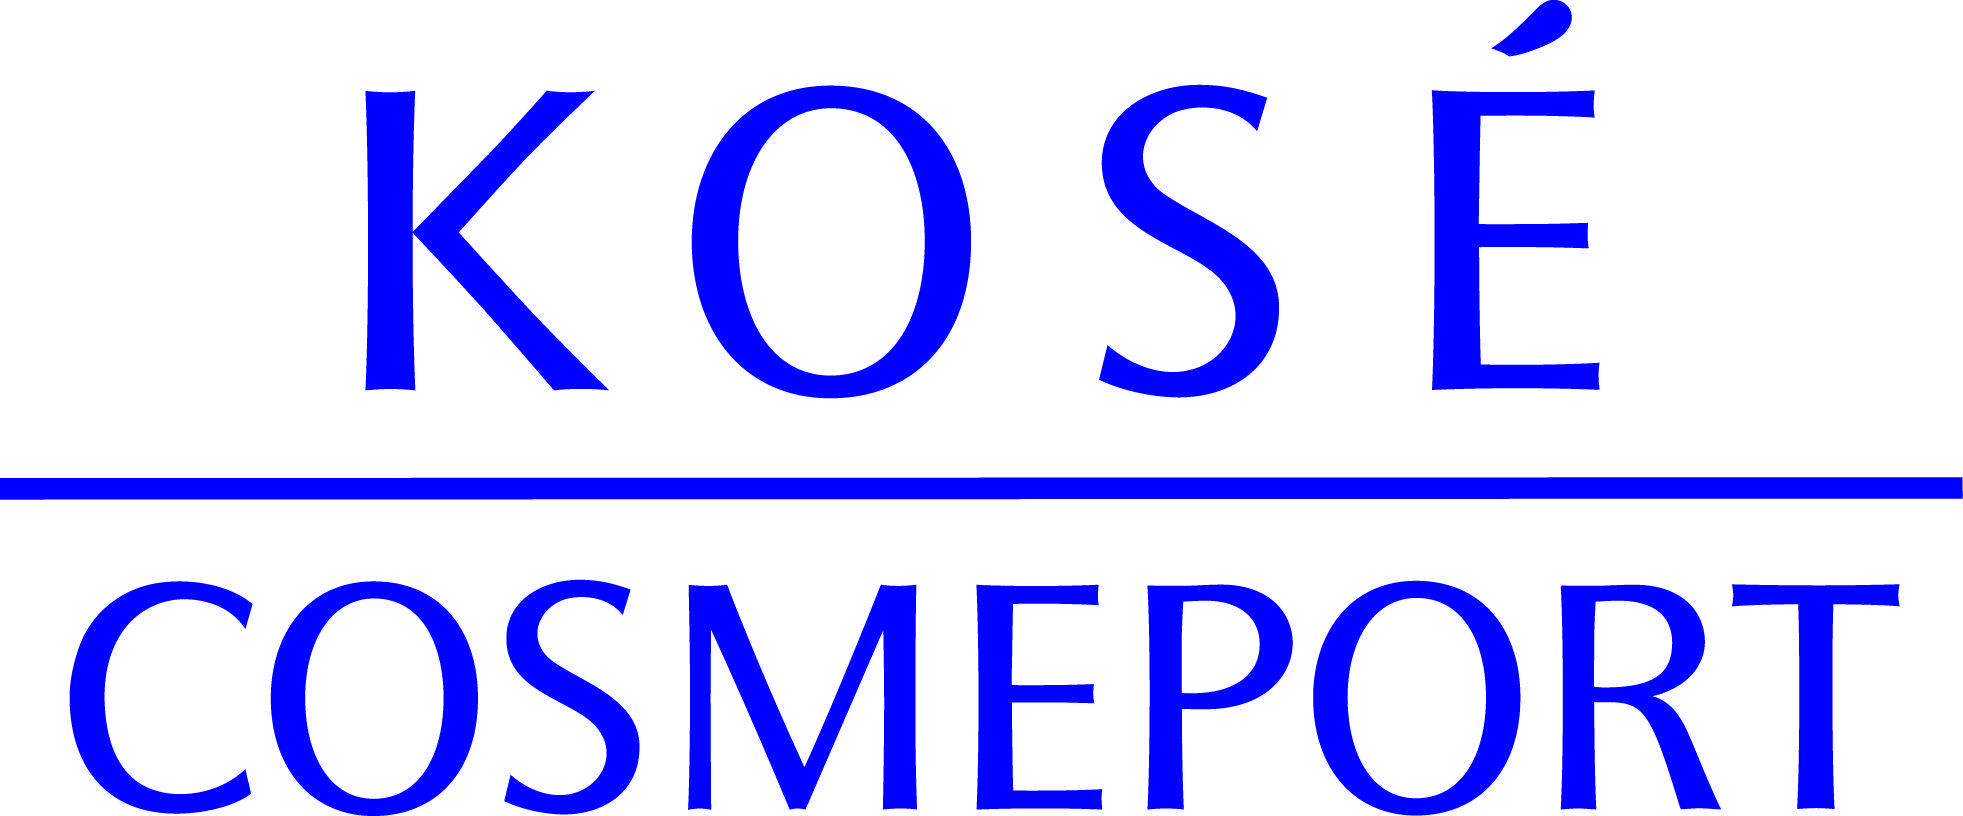 Kose Logo - Kose